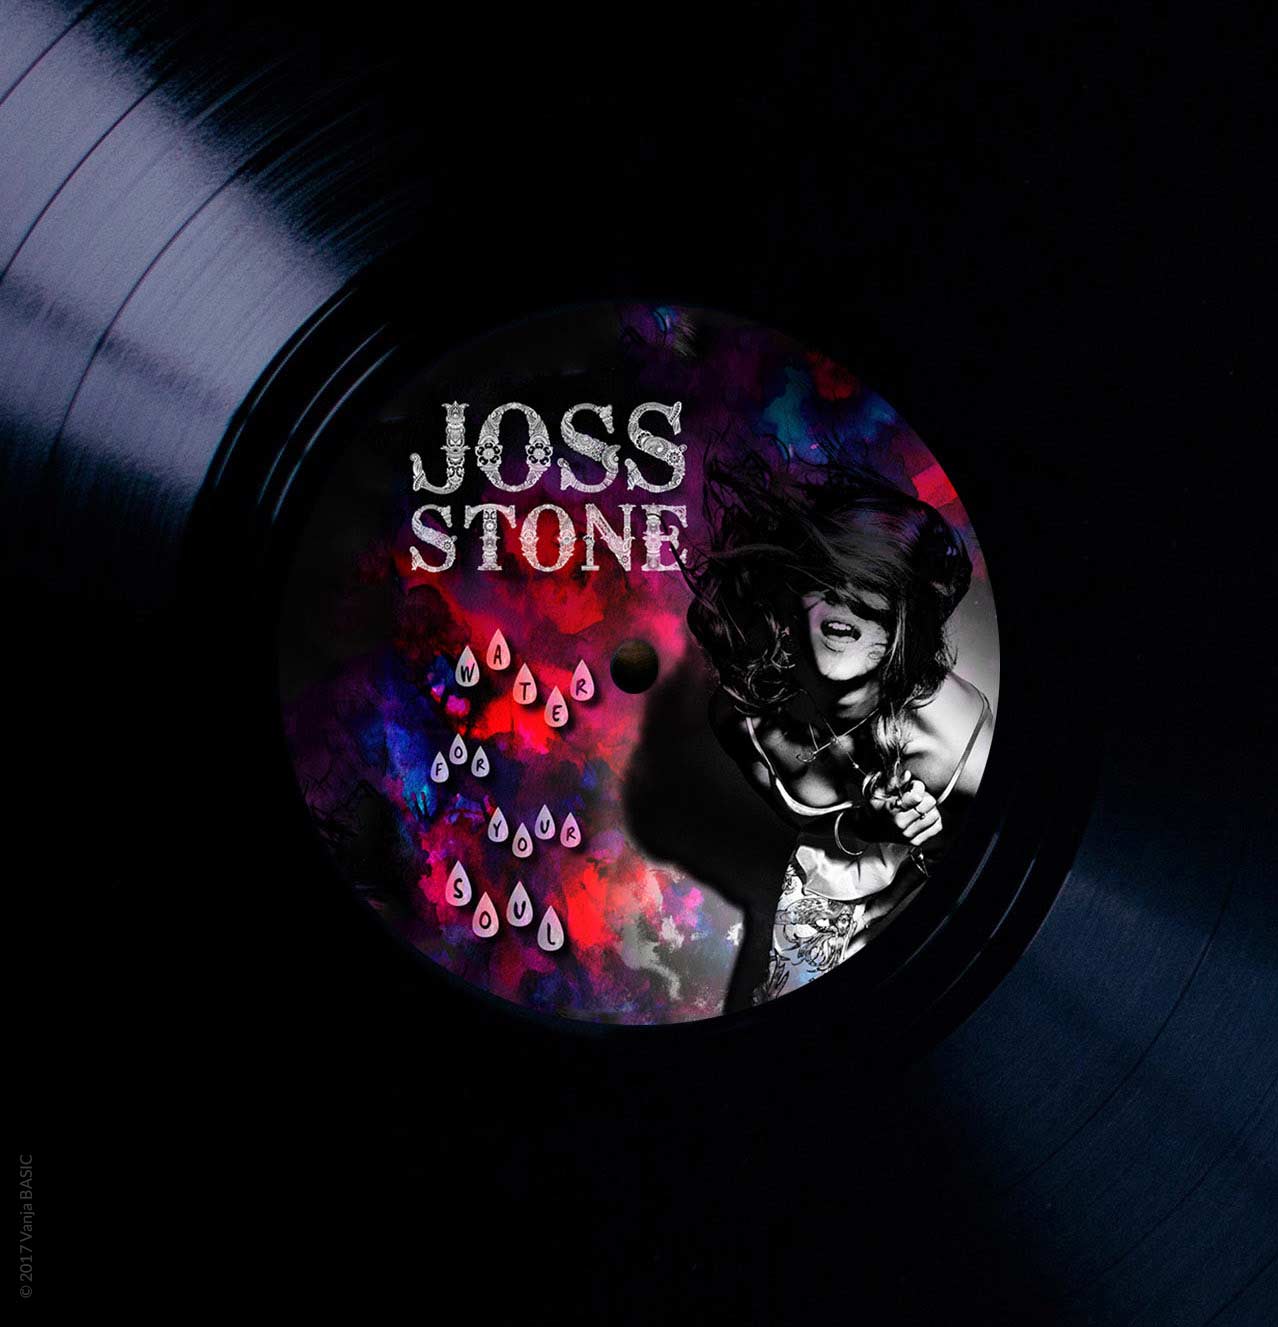 Pochette pour l’album « Water for your soul » de Joss Stone, artiste anglaise de musique soul